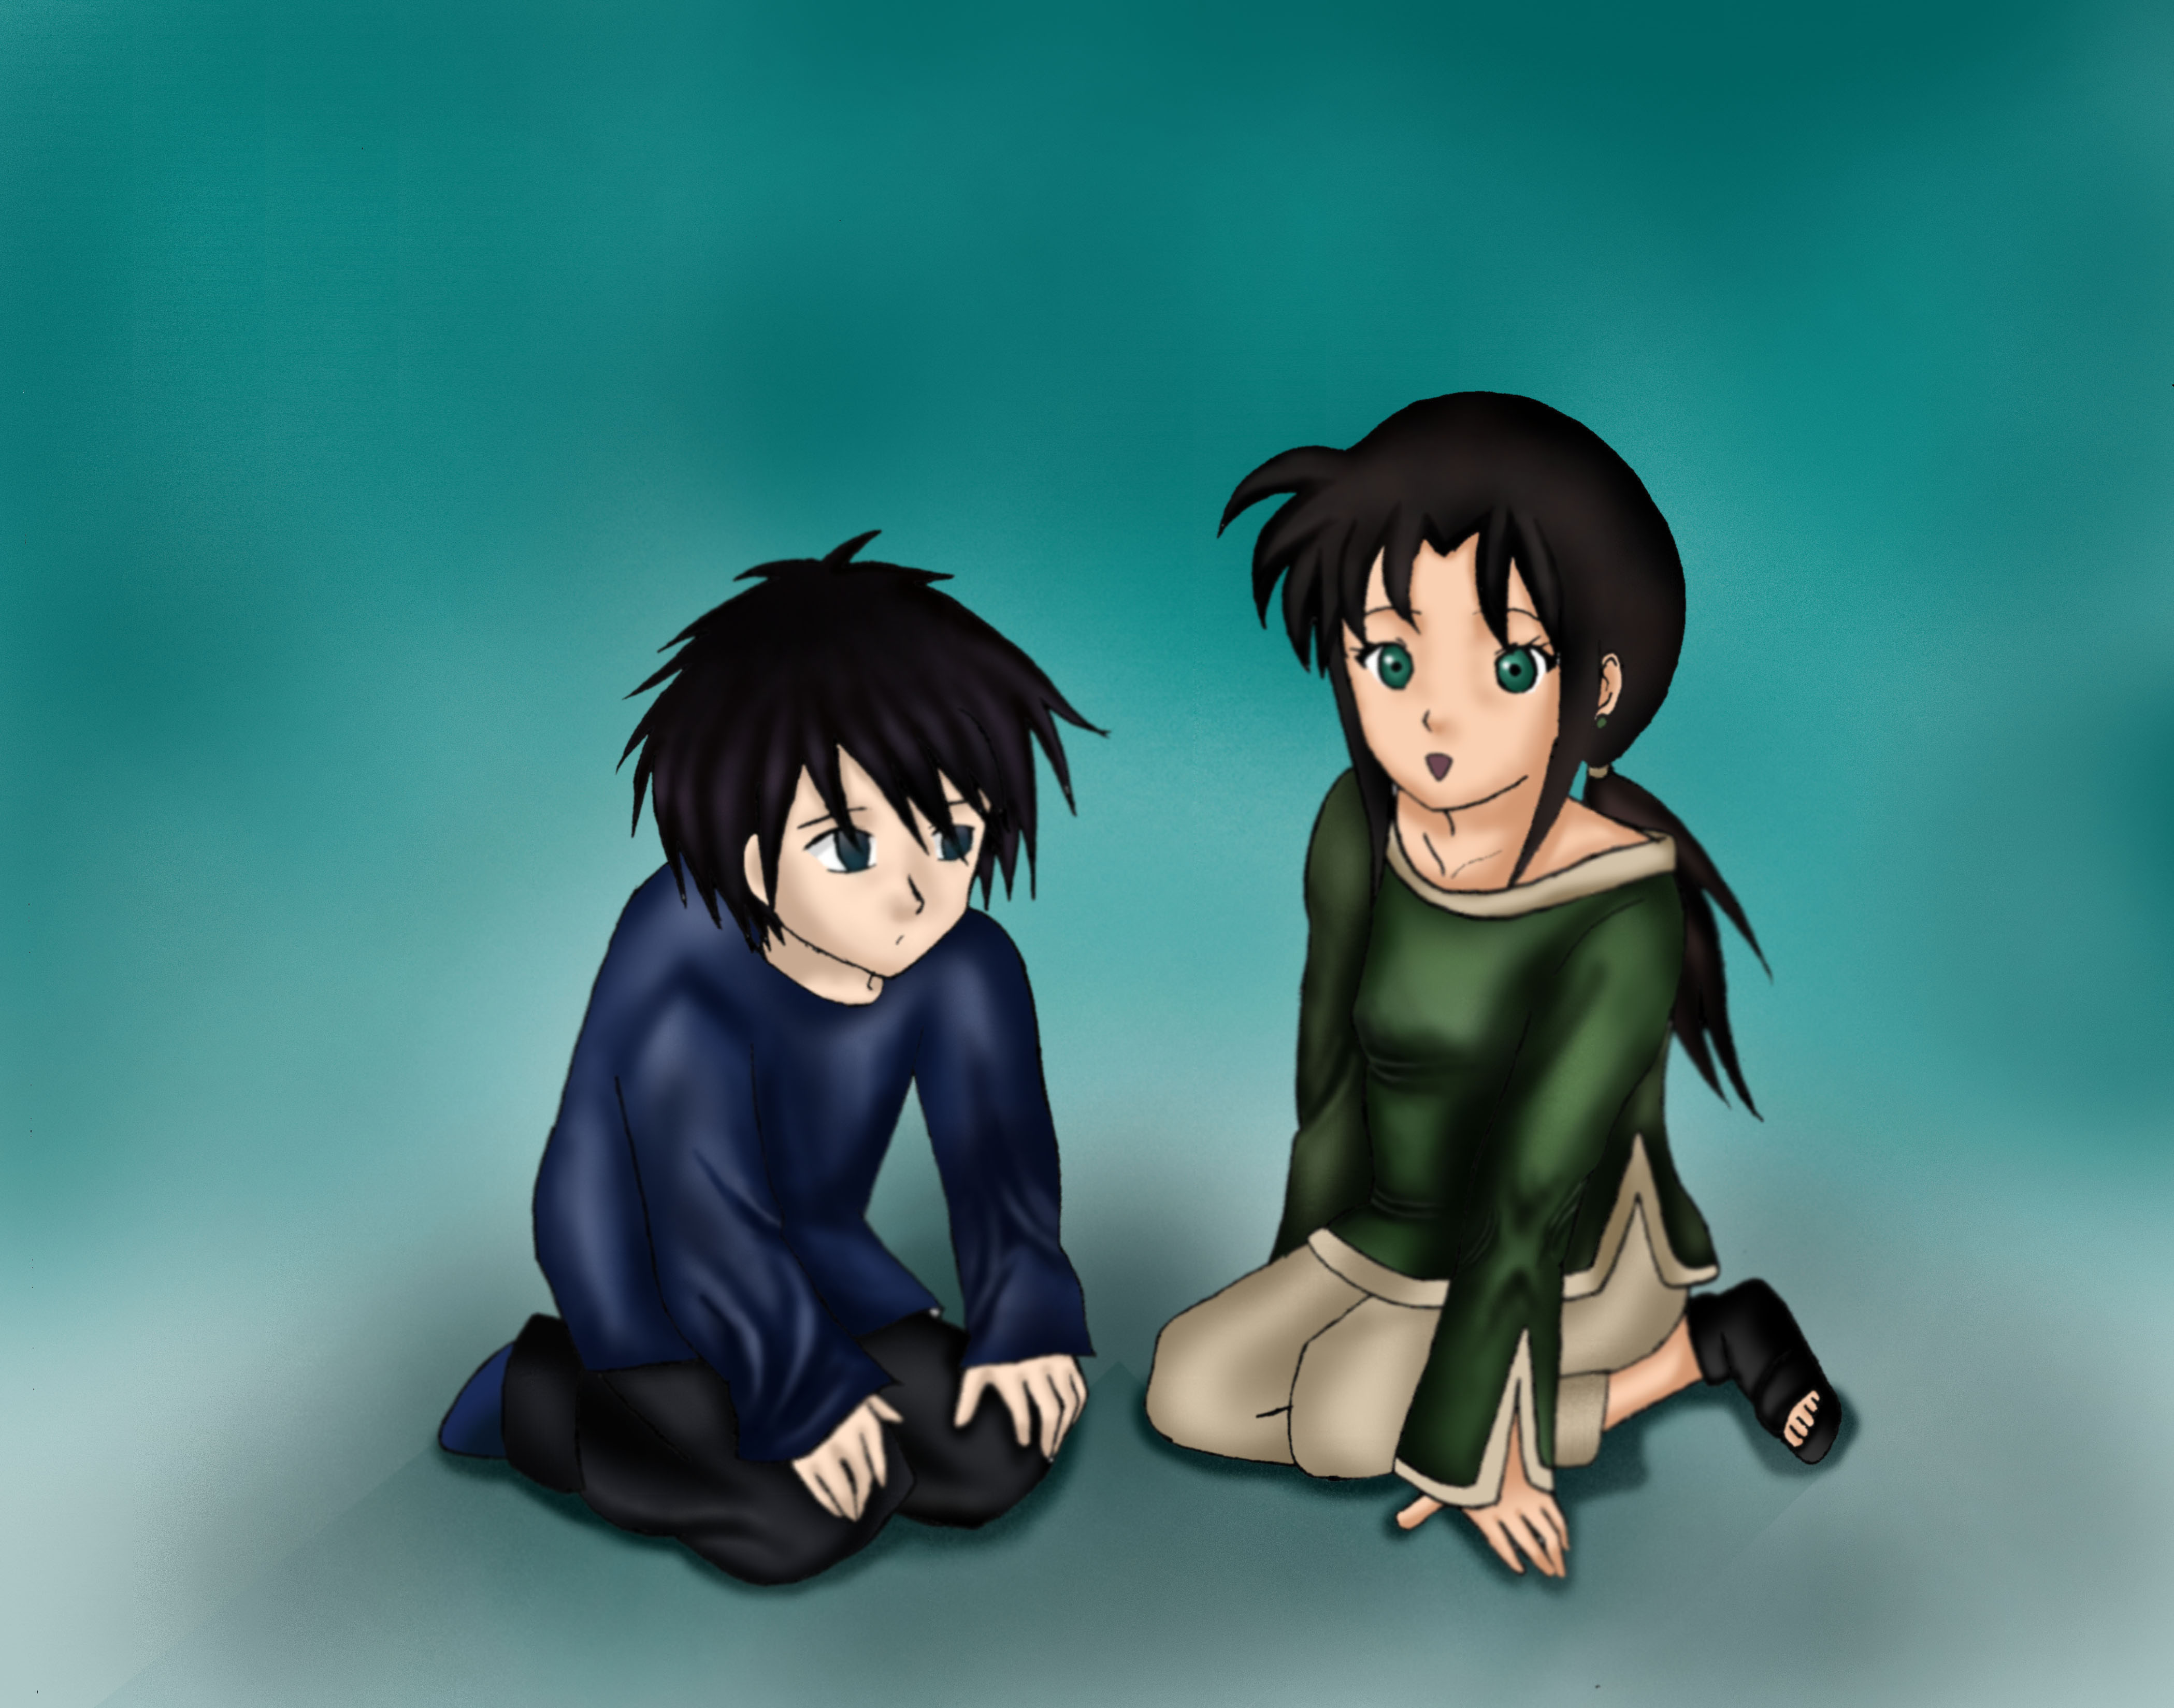 Keiko and Kazuki by DarknessEternity1027